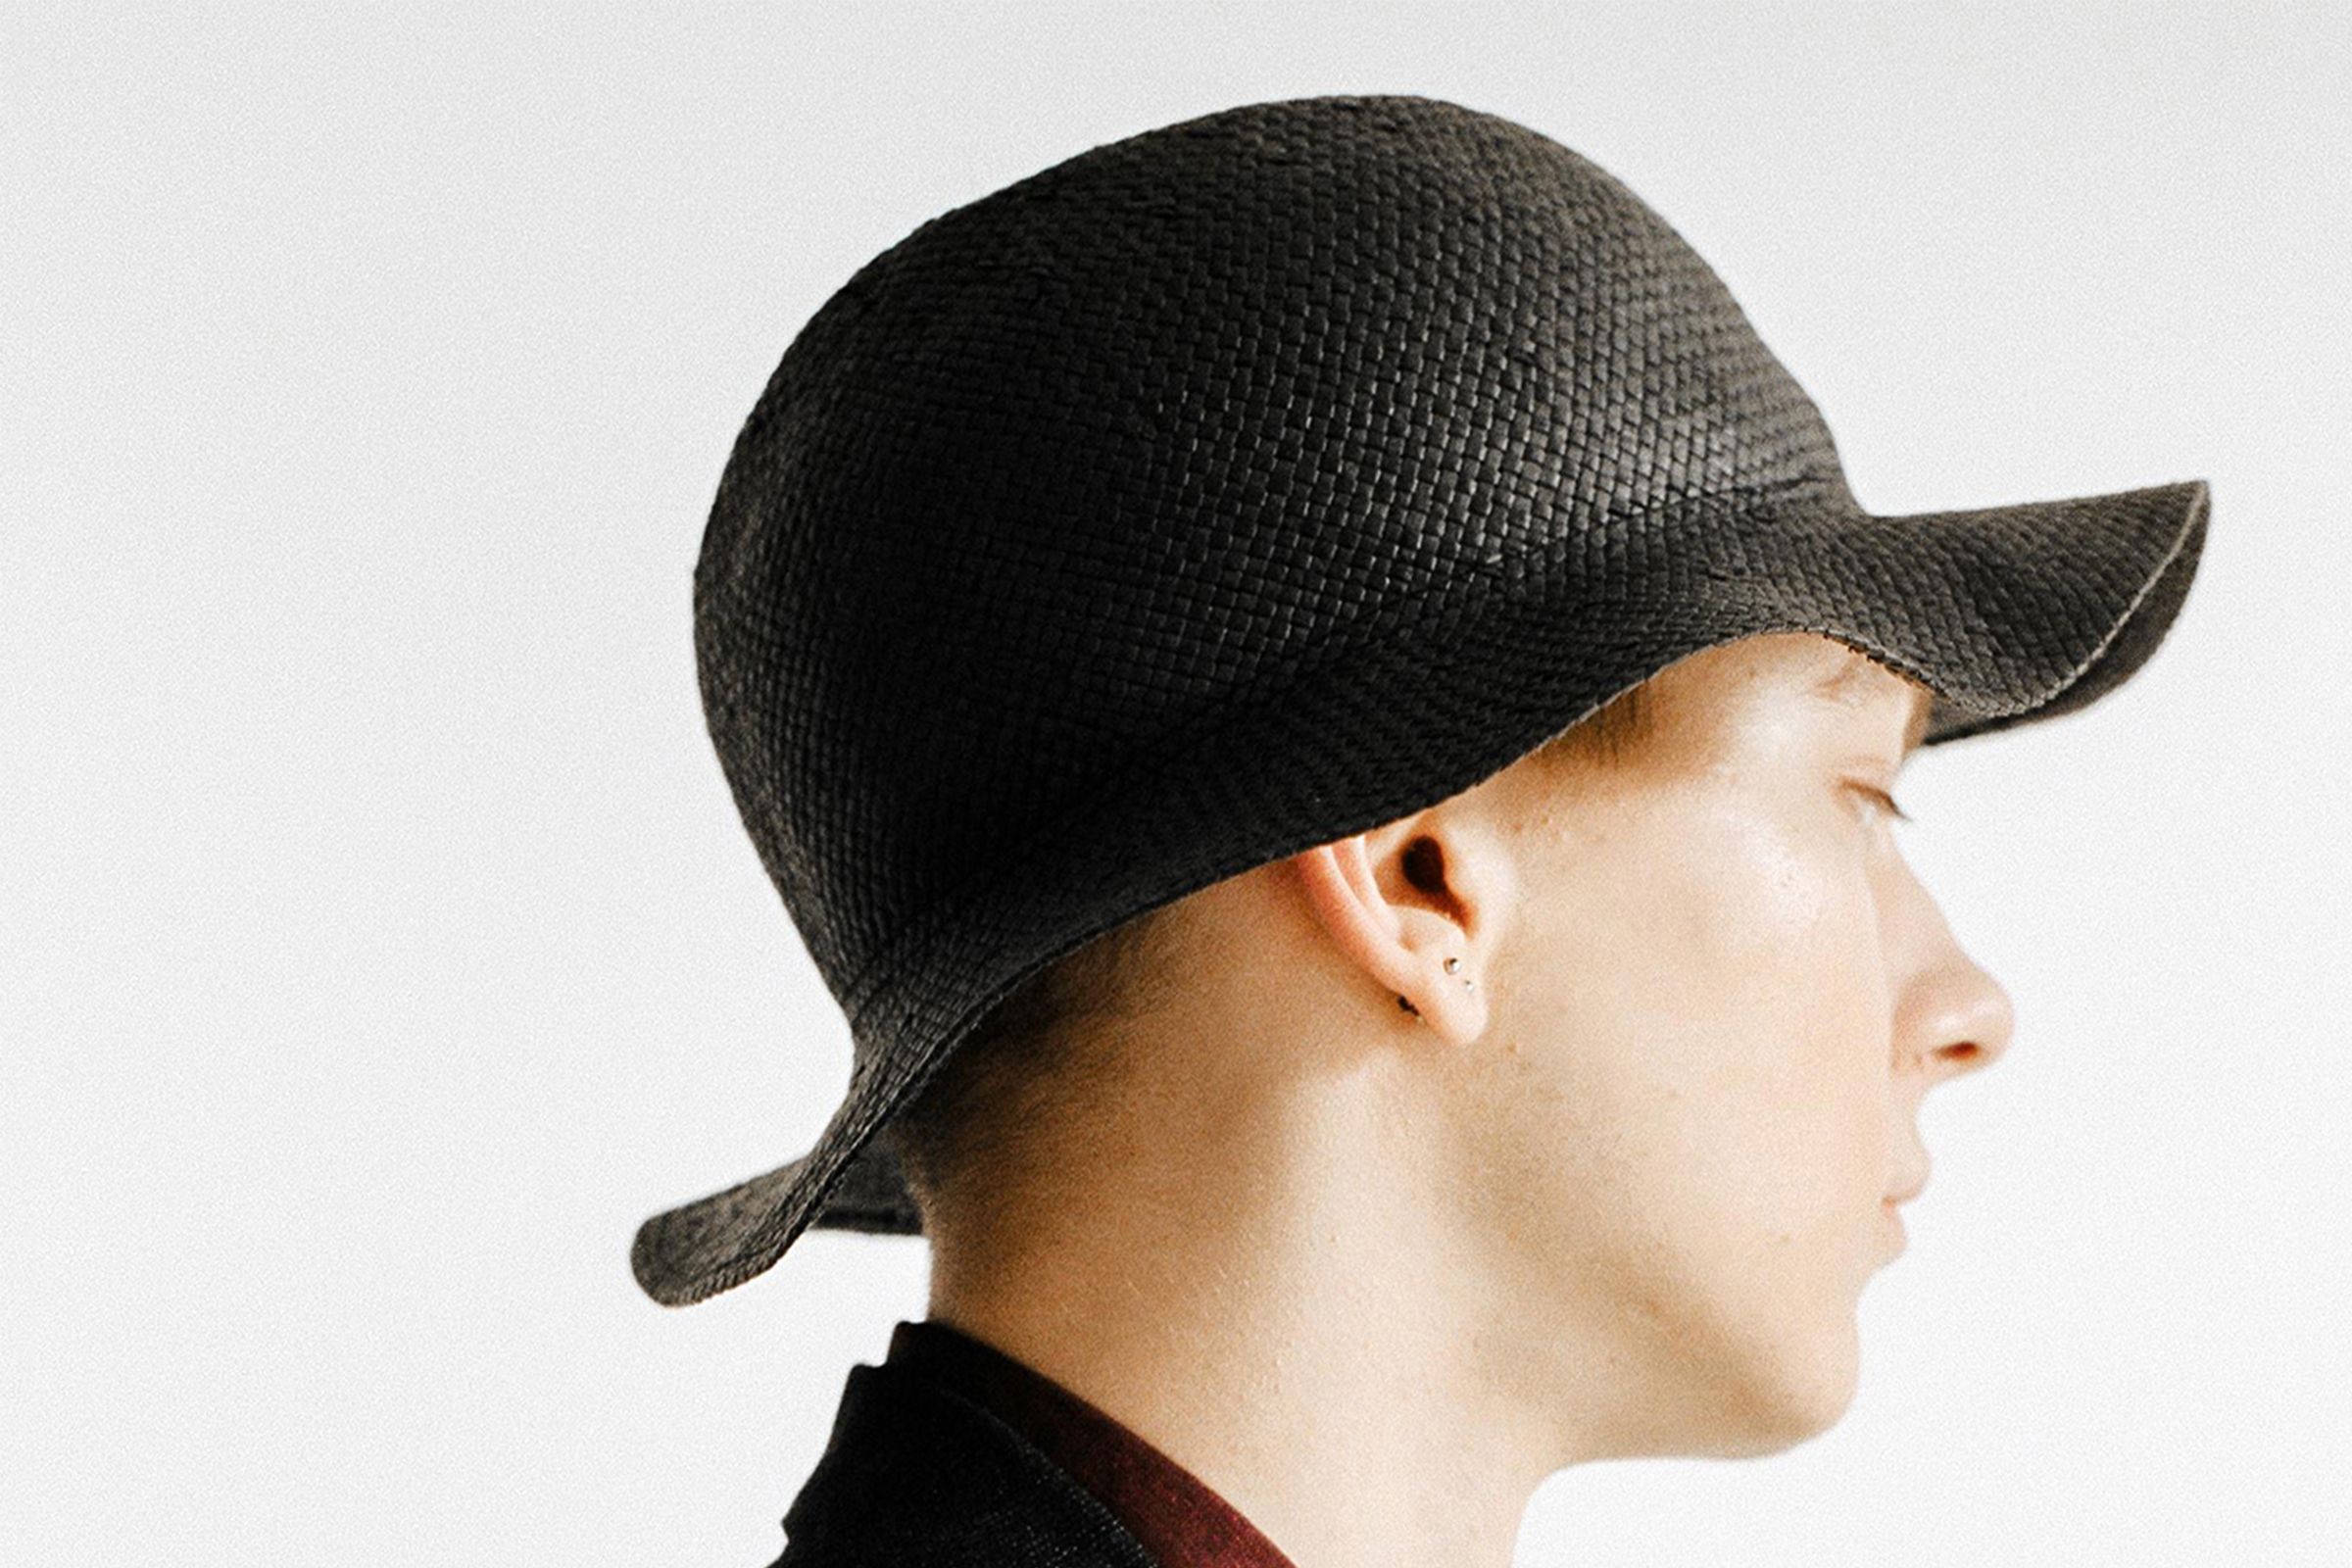 Louis Vuitton Men's Hat Supreme X Limited Edition 5 Panels Camouflage Cap